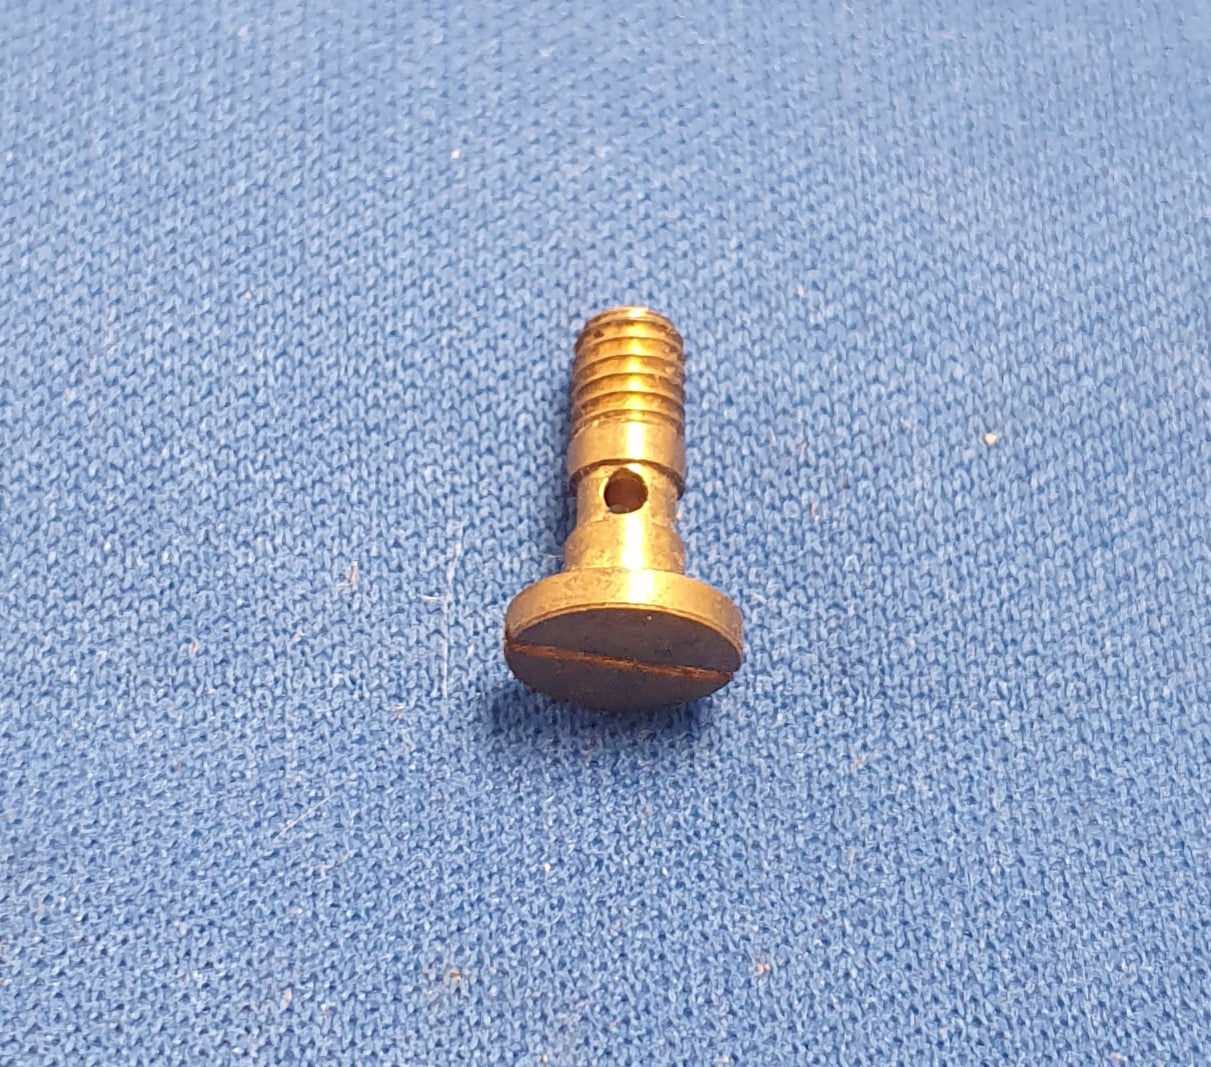 RL101 Steam inlet screw.